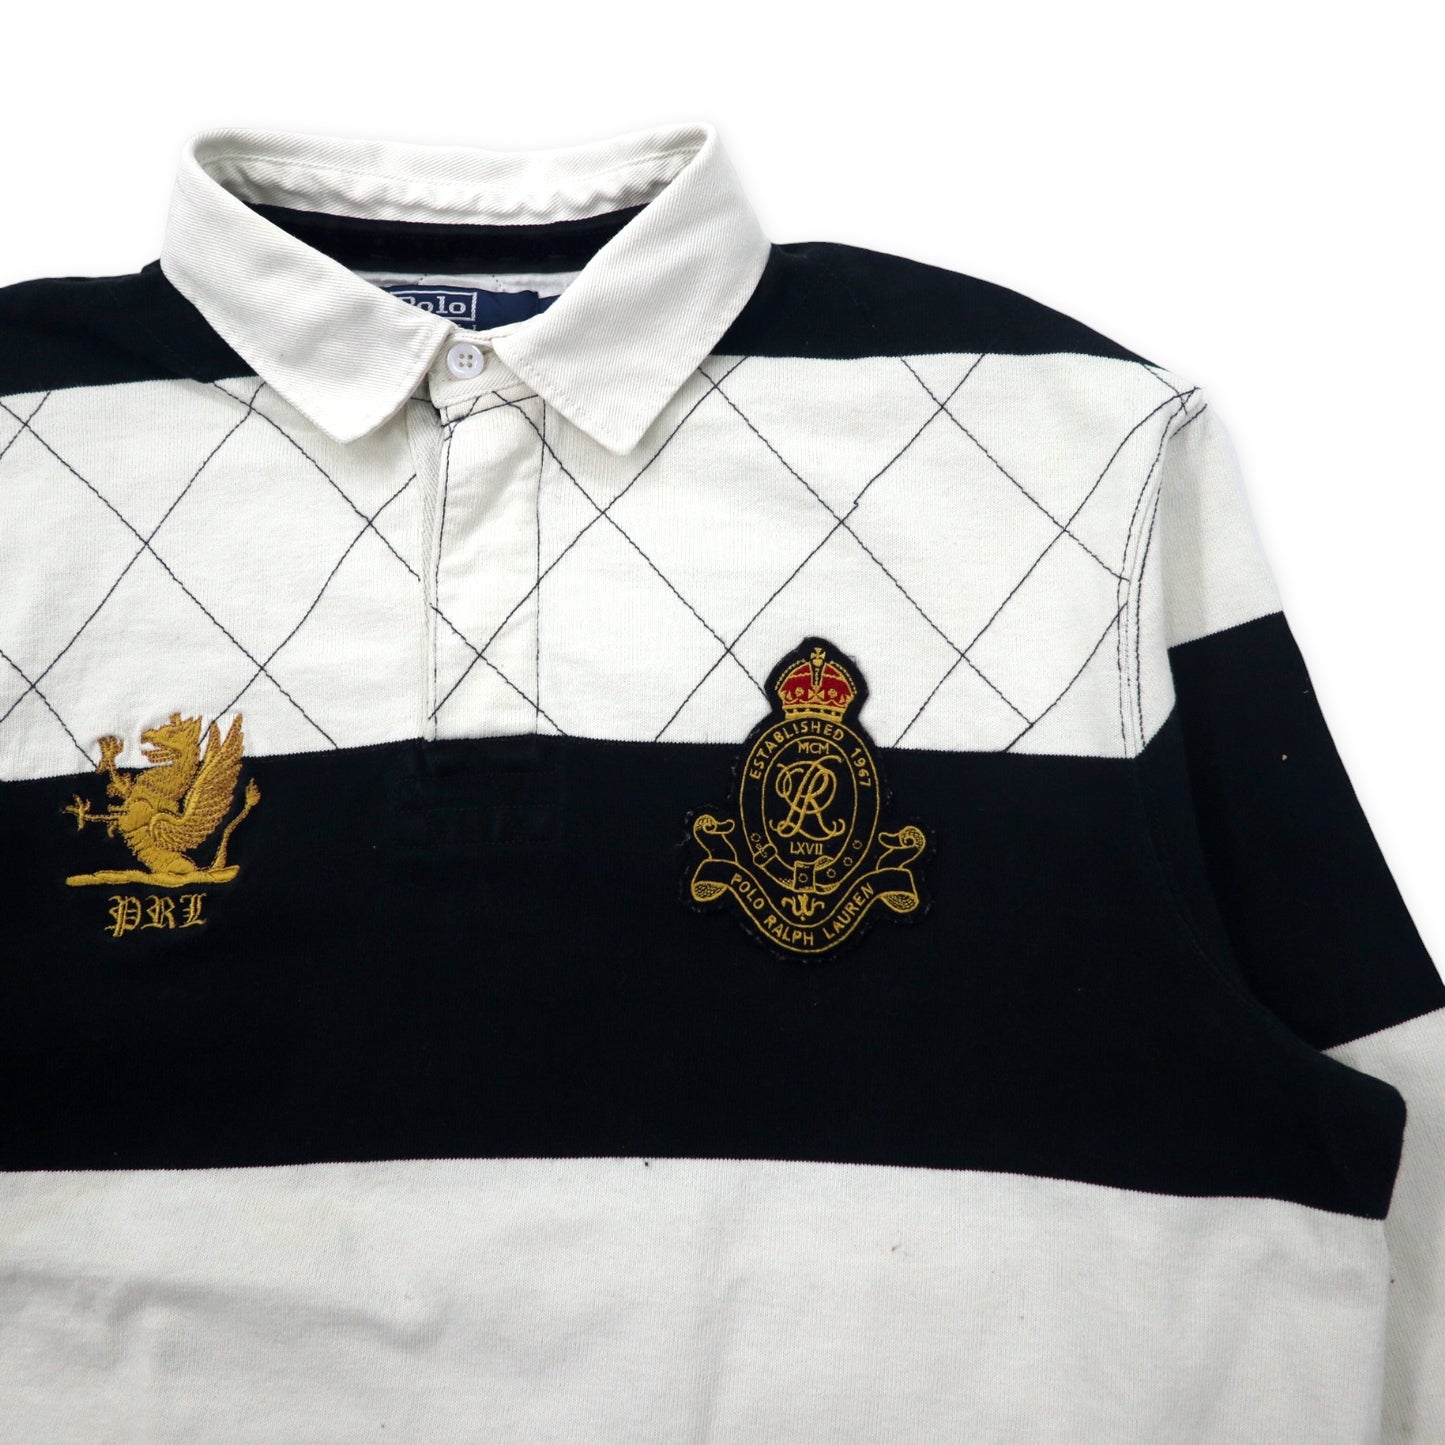 Polo by Ralph Lauren ボーダー ラガーシャツ XL ホワイト ブラック コットン CUSTOM FIT ロゴ刺繍 ナンバリング ビッグサイズ スリランカ製